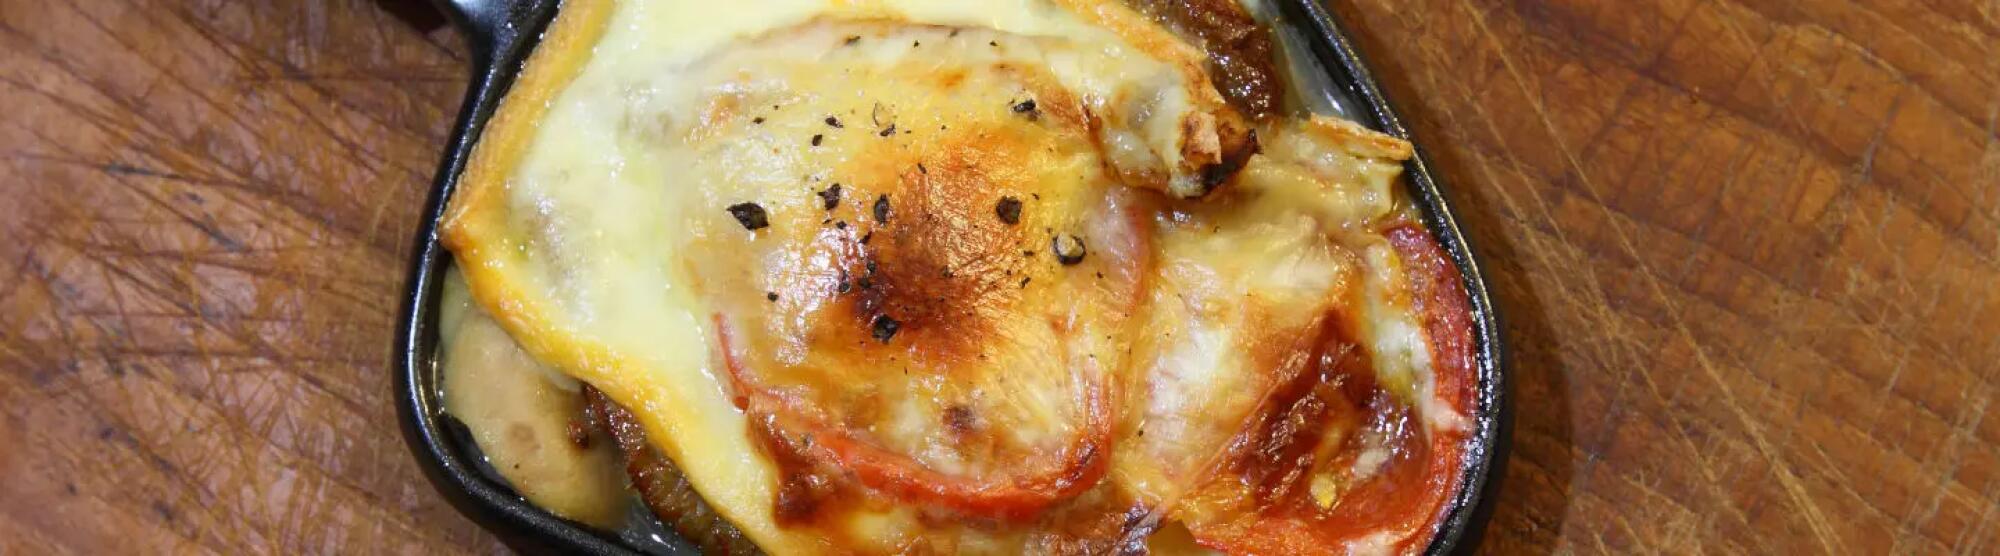 Recette : Raclette à la provençale